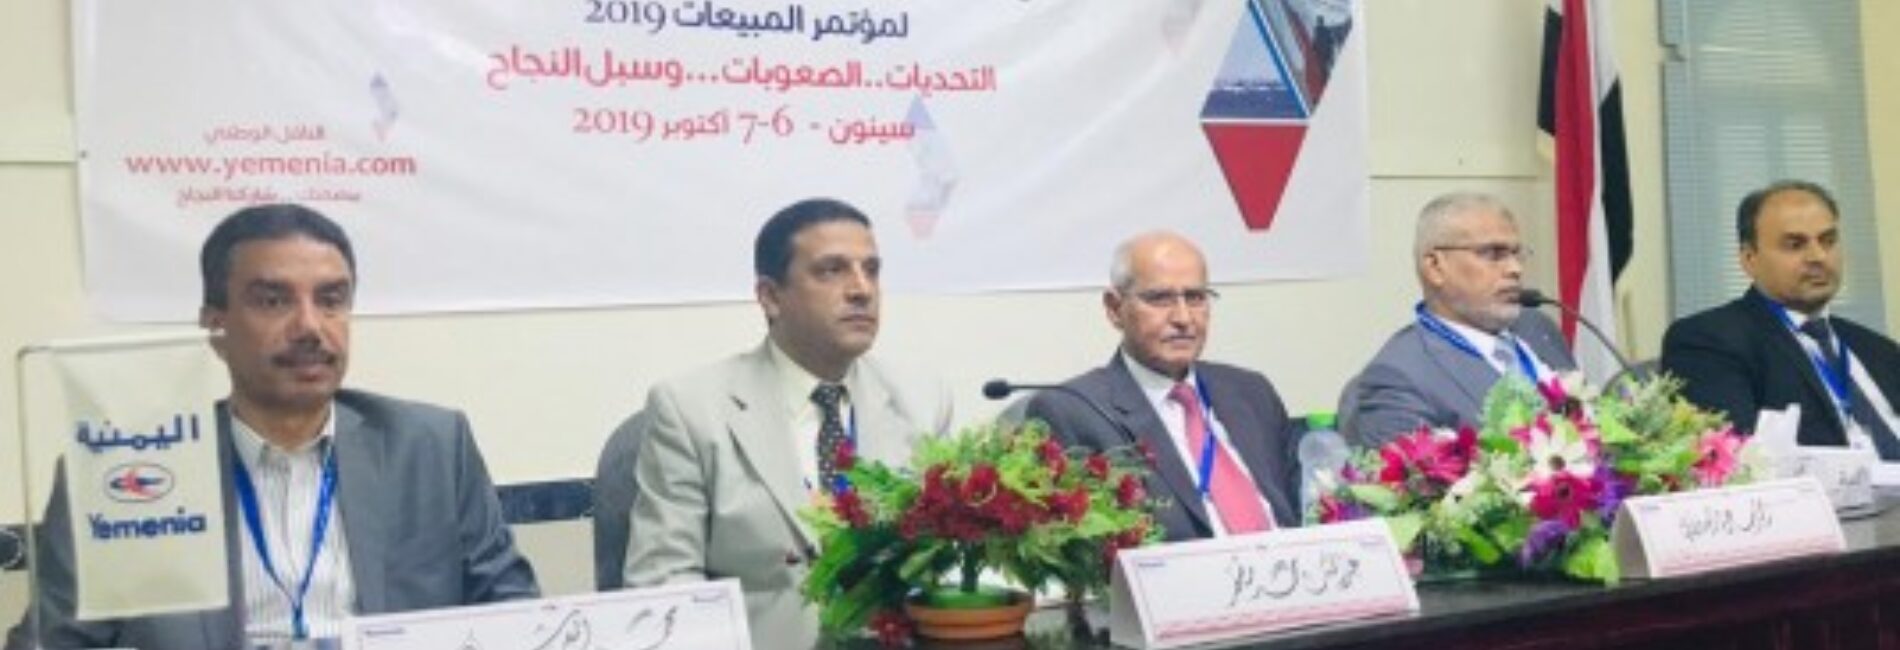 في اليوم الأول من أعمال الاجتماع السنوي للخطوط الجوية اليمنية